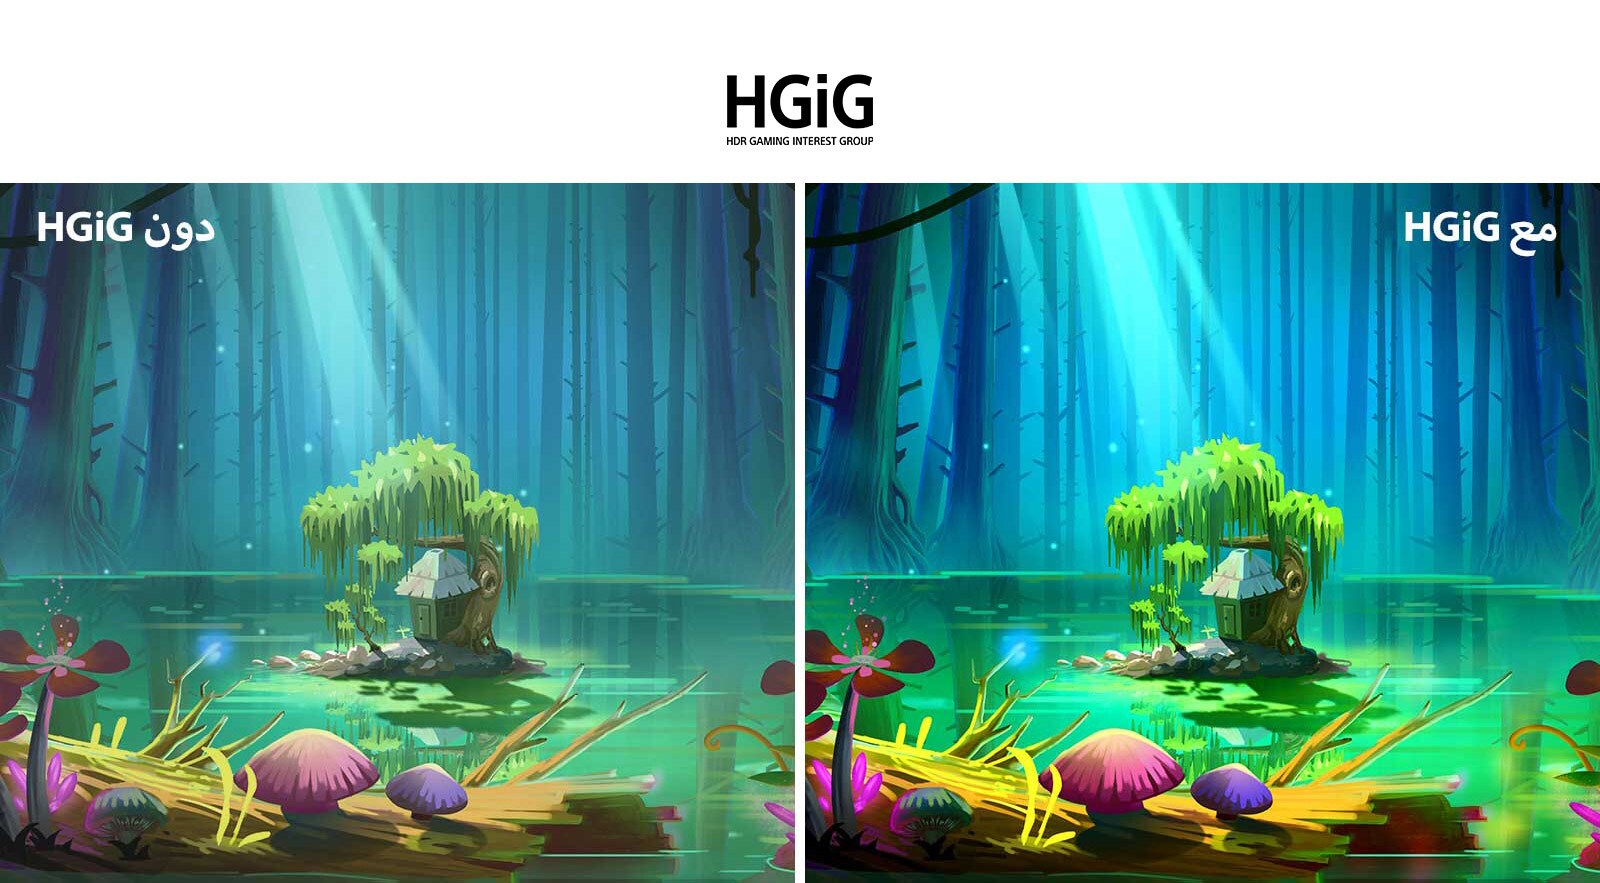 صورة متحركة ومنزل صغير بجانب شجرة على مساحة صغيرة في وسط بركة محاطة بأشجار طويلة، إضافة لظهور نص "مع HGIG" في الجزء الأيمن العلوي للإشارة لأن الصورة أكثر إشراقًا وأفضل جودة مقارنةً بتلك التي لا تتميز بها HGiG.